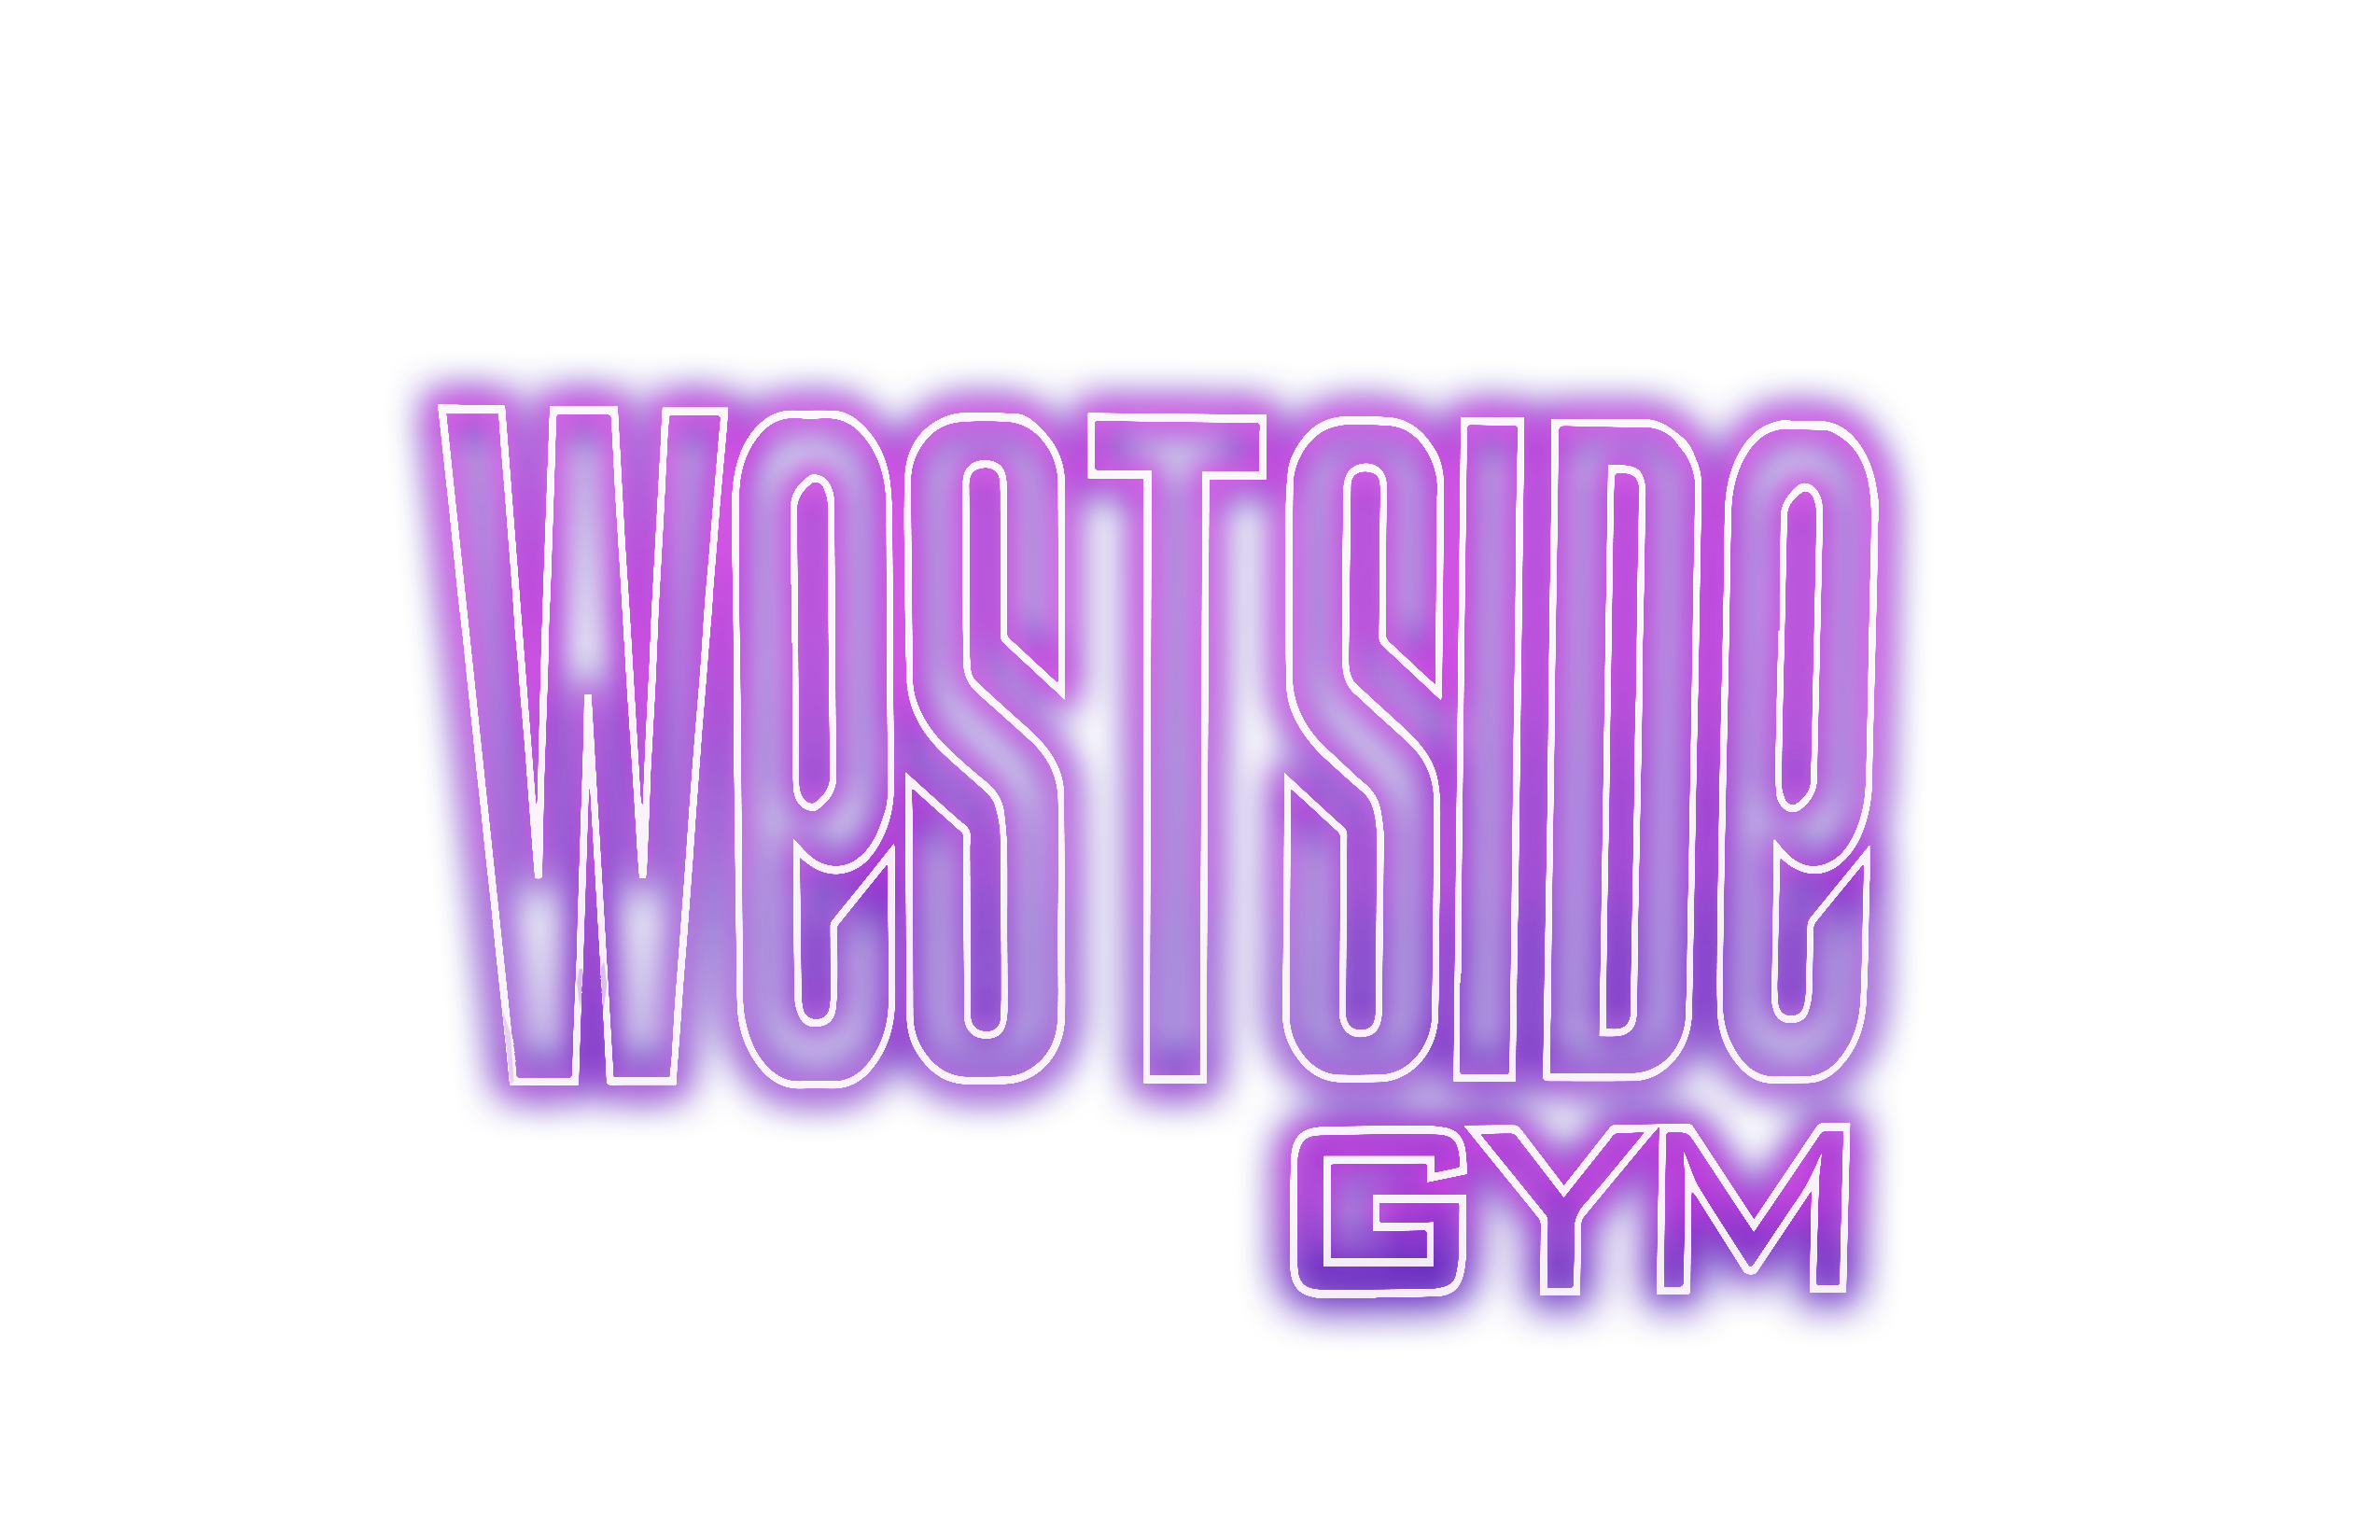 WestSideGym